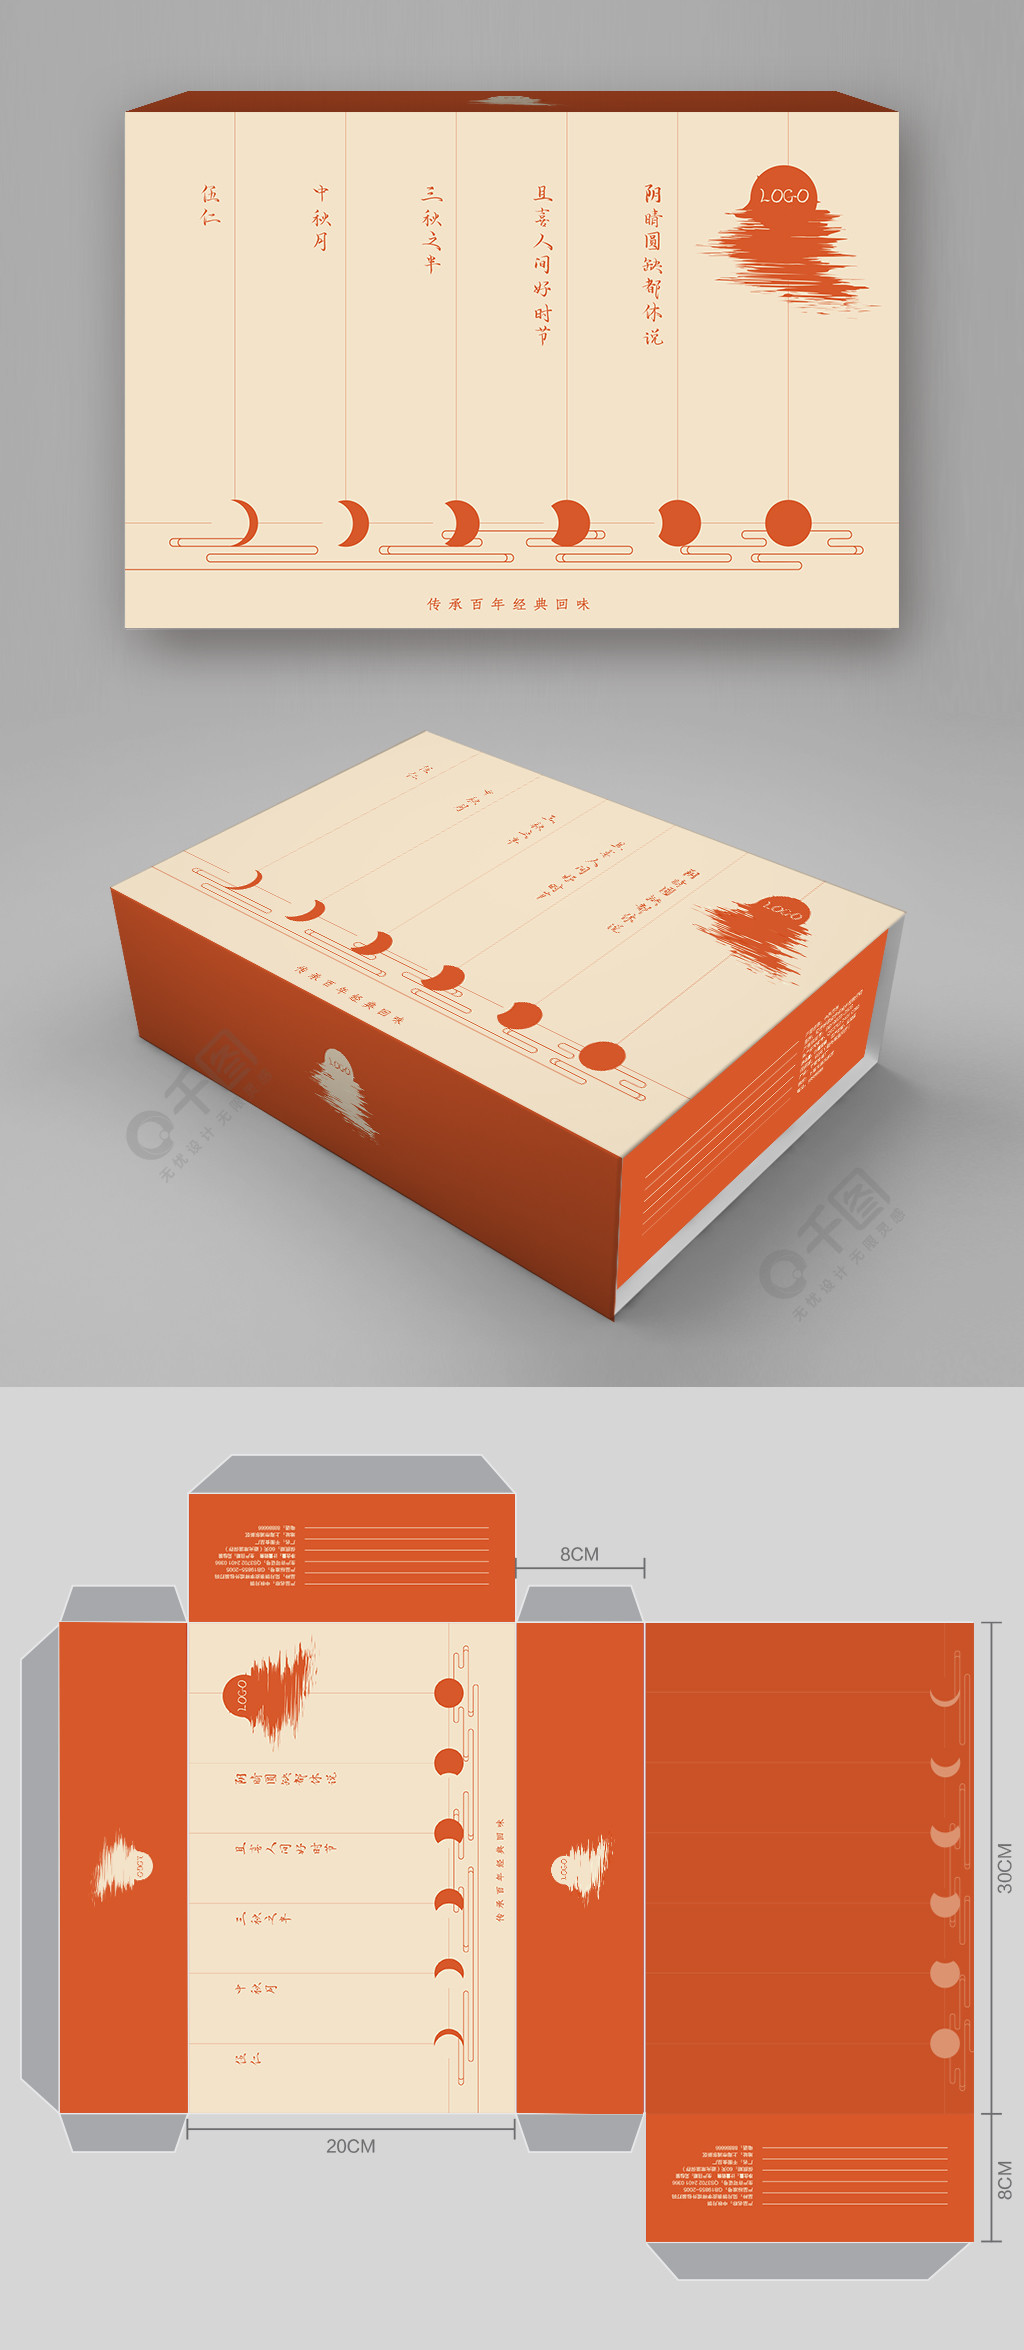 中秋月饼盒刀版图2年前发布